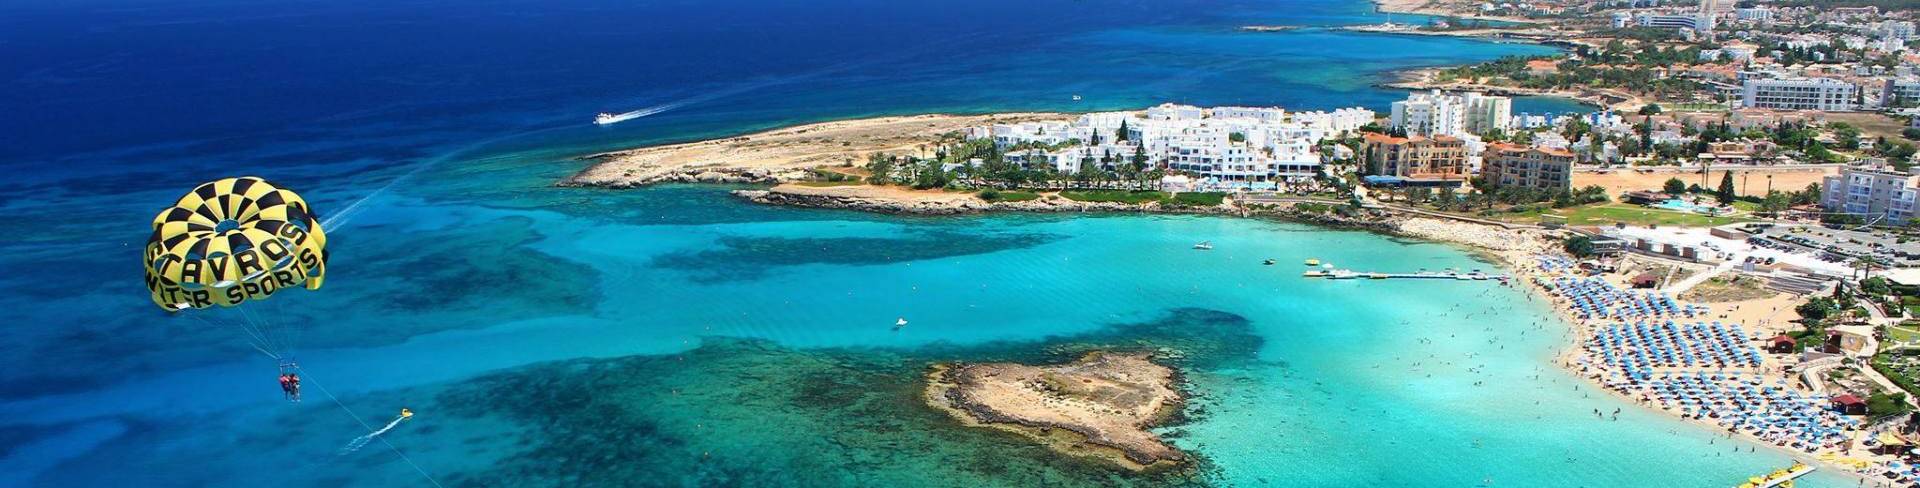 Протарас - пляжный курорт на Кипре